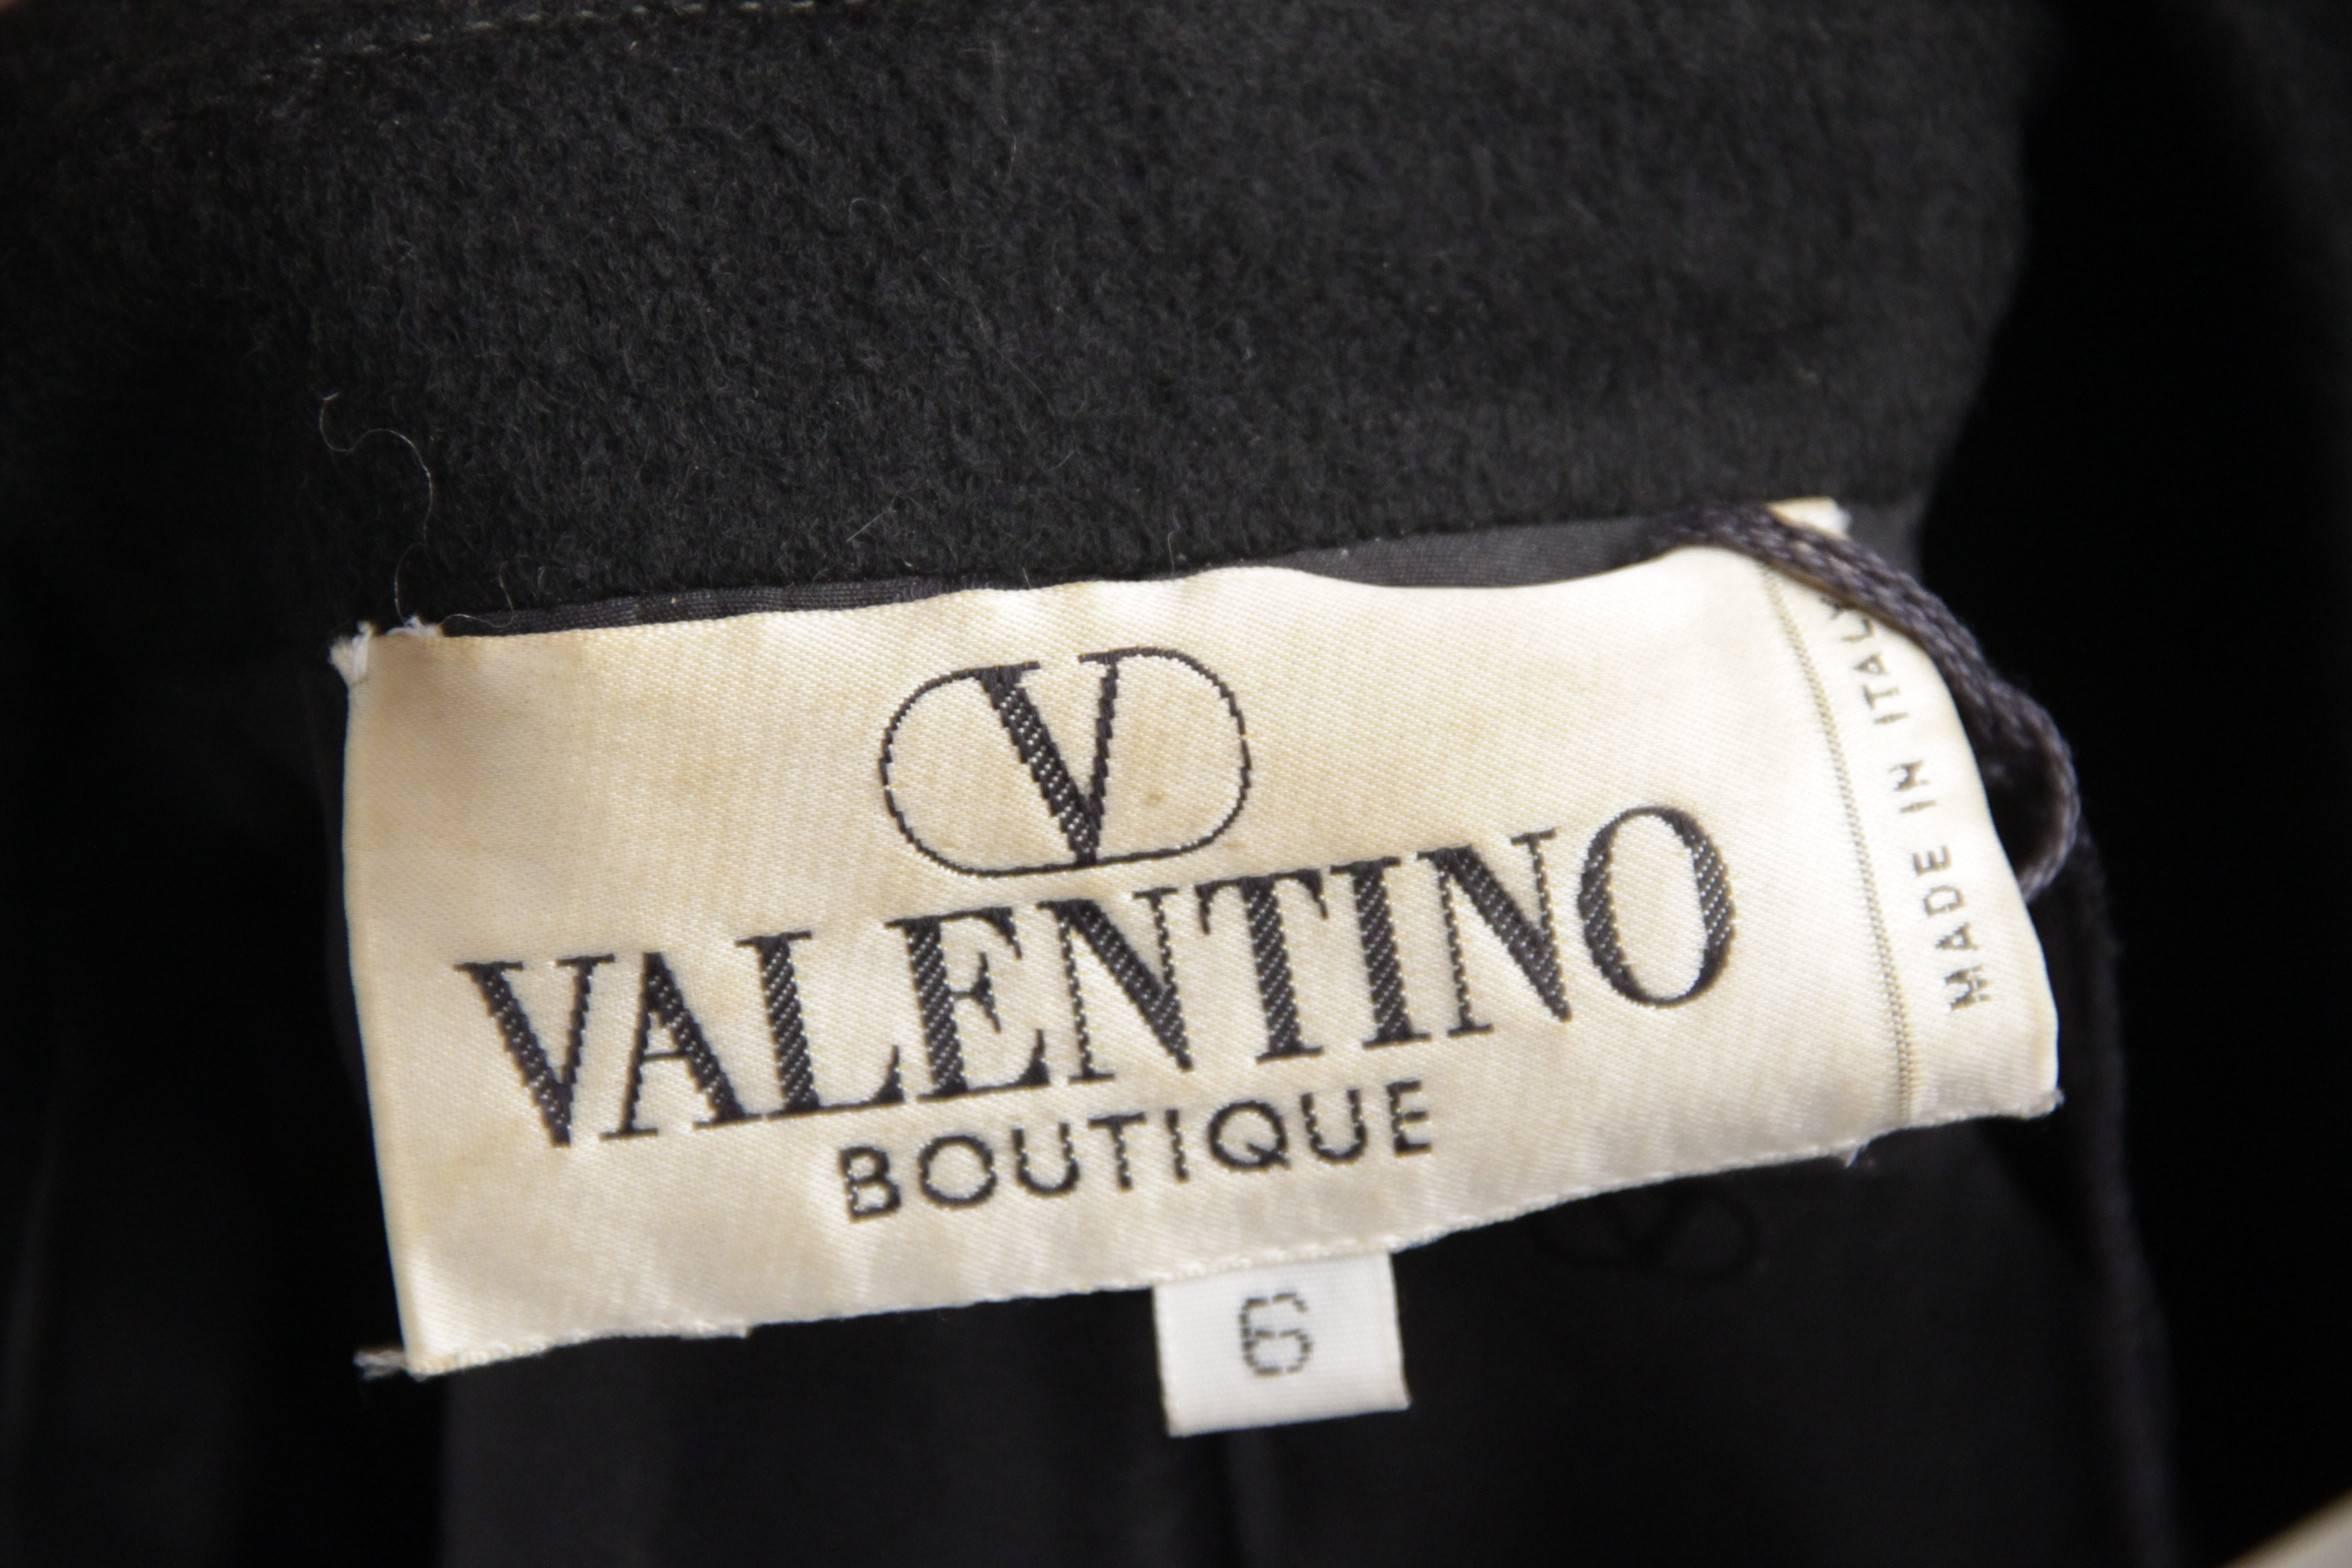 VALENTINO BOUTIQUE Vintage Black Wool BLAZER Jacket SIZE 6 GT 5